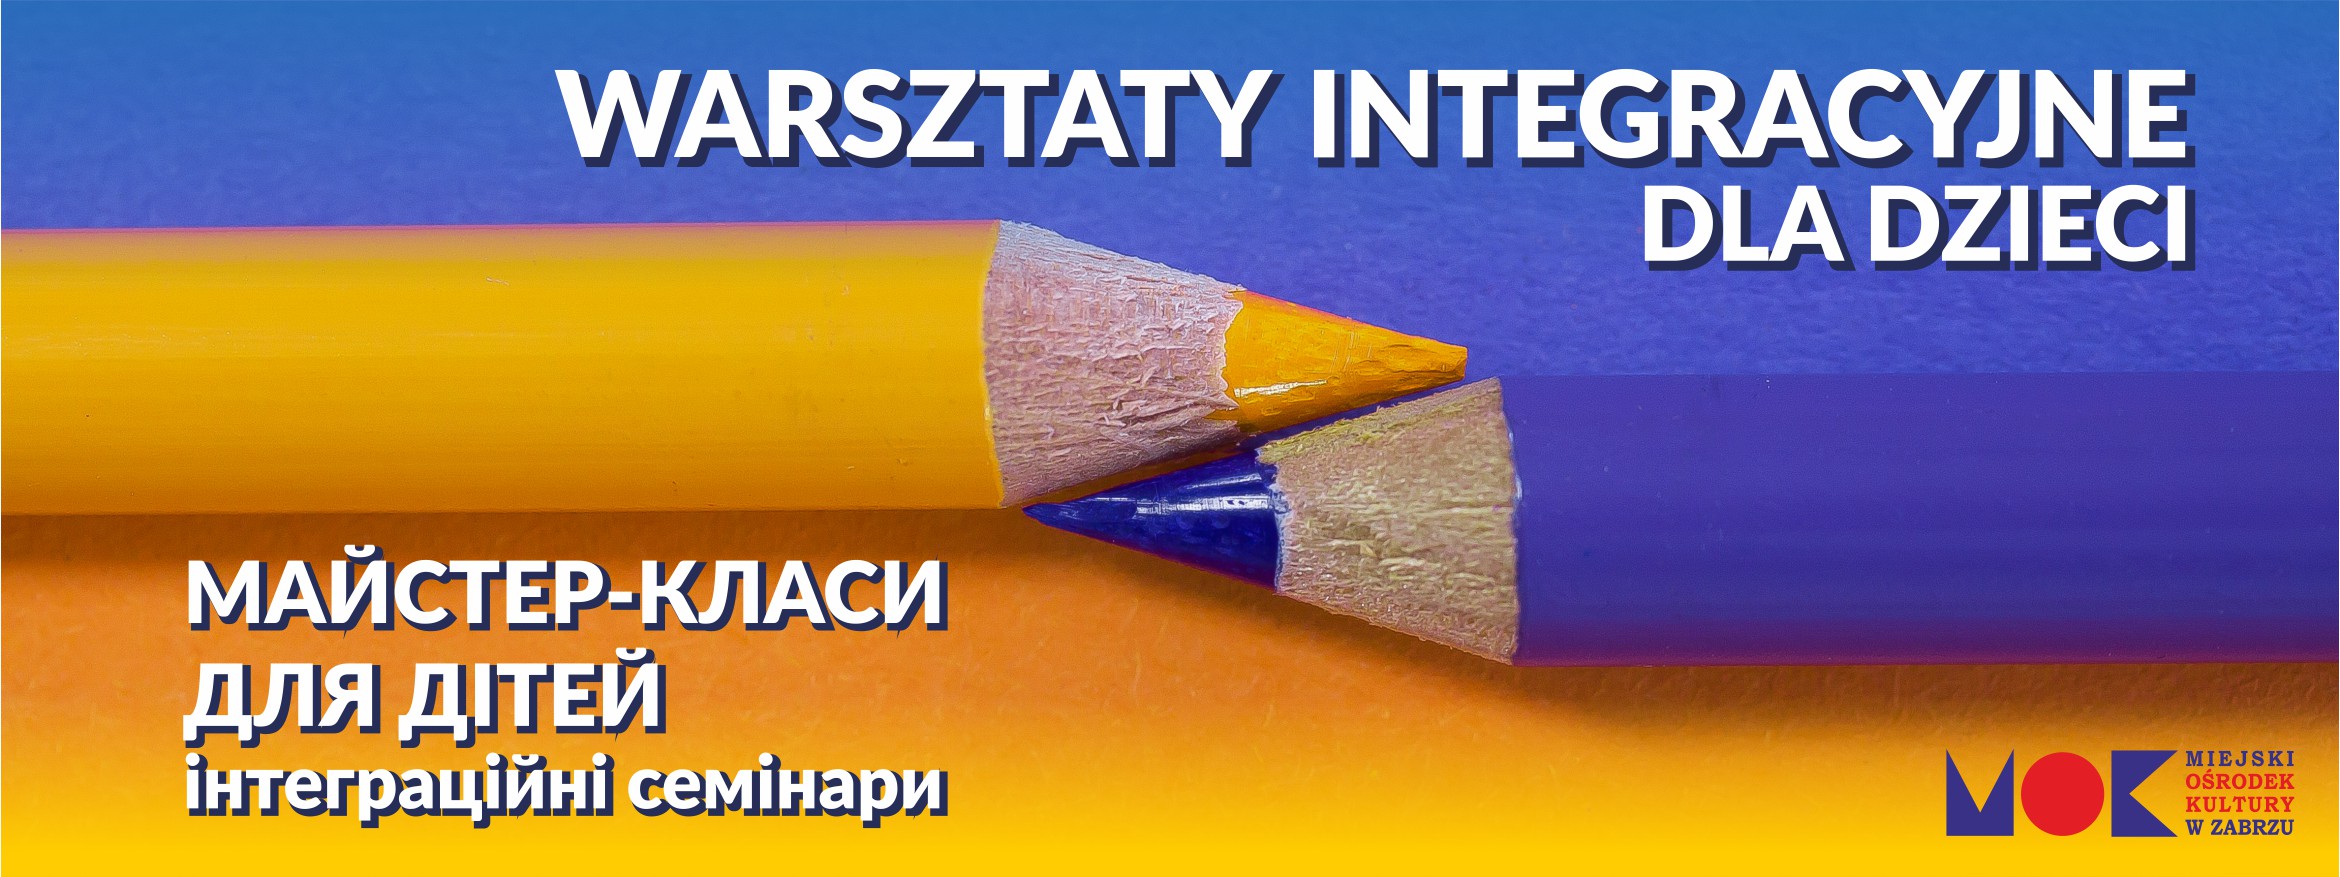 kredki żółto-niebieskie, warsztaty integracyjne dla ukraińskich dzieci